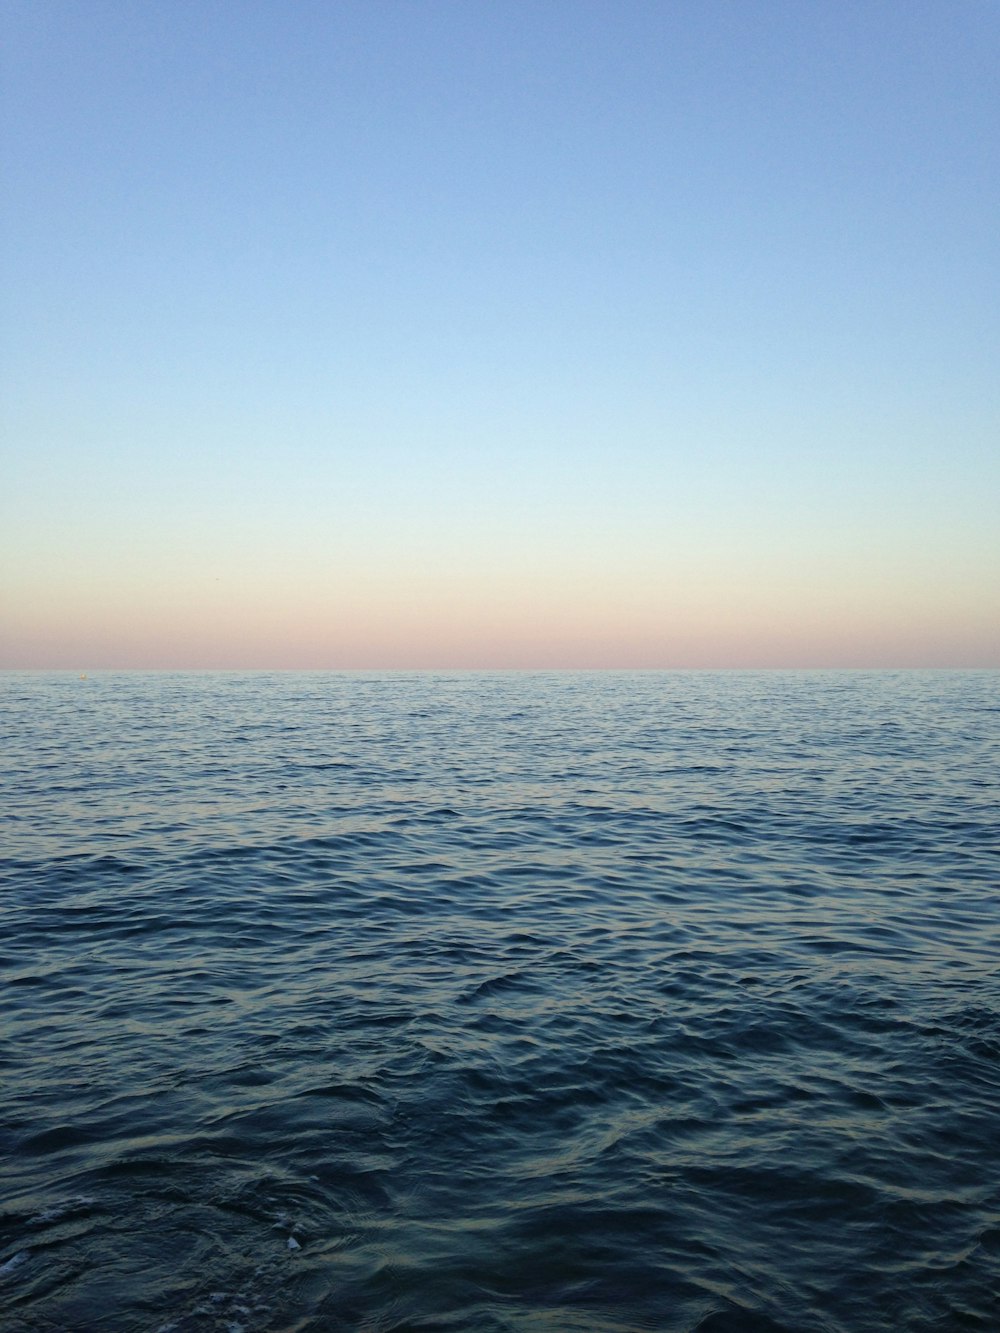 Ozean in der Nähe des blauen Himmels am Tag